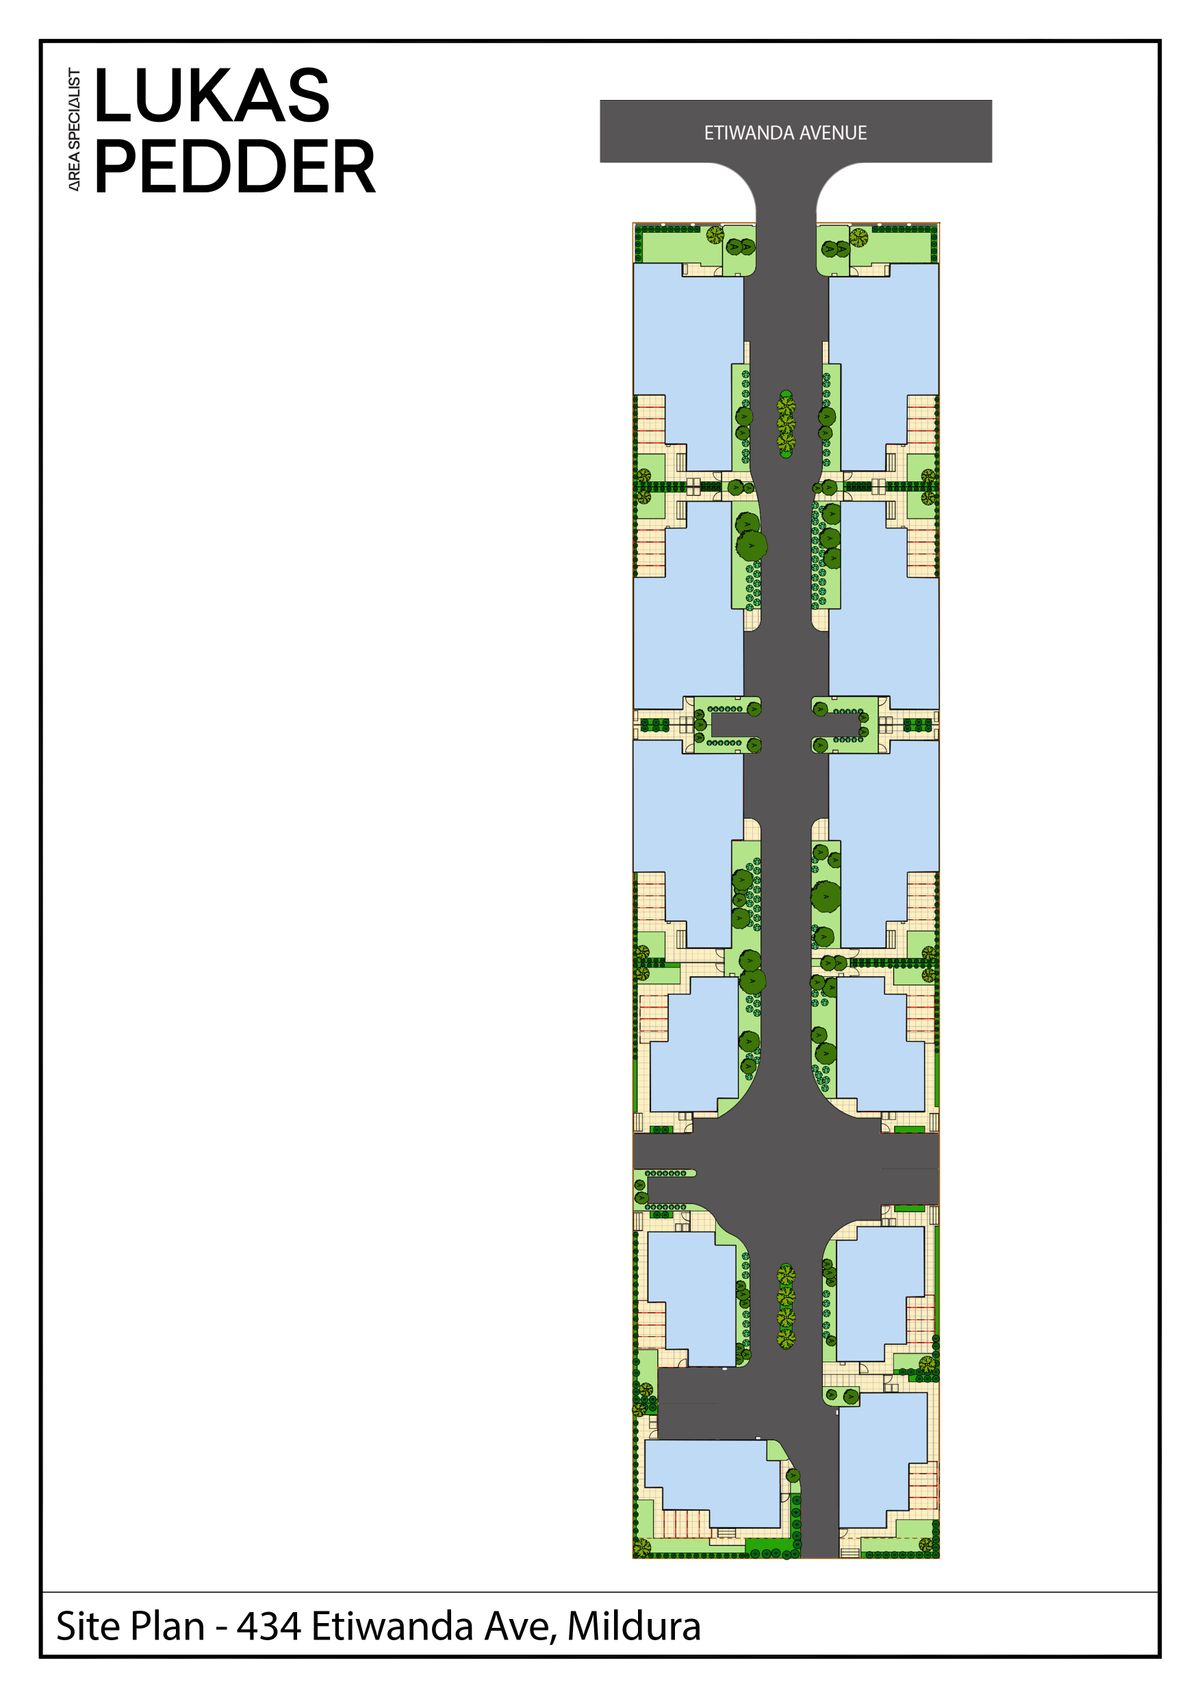 Site plan for 434 Etiwanda Ave